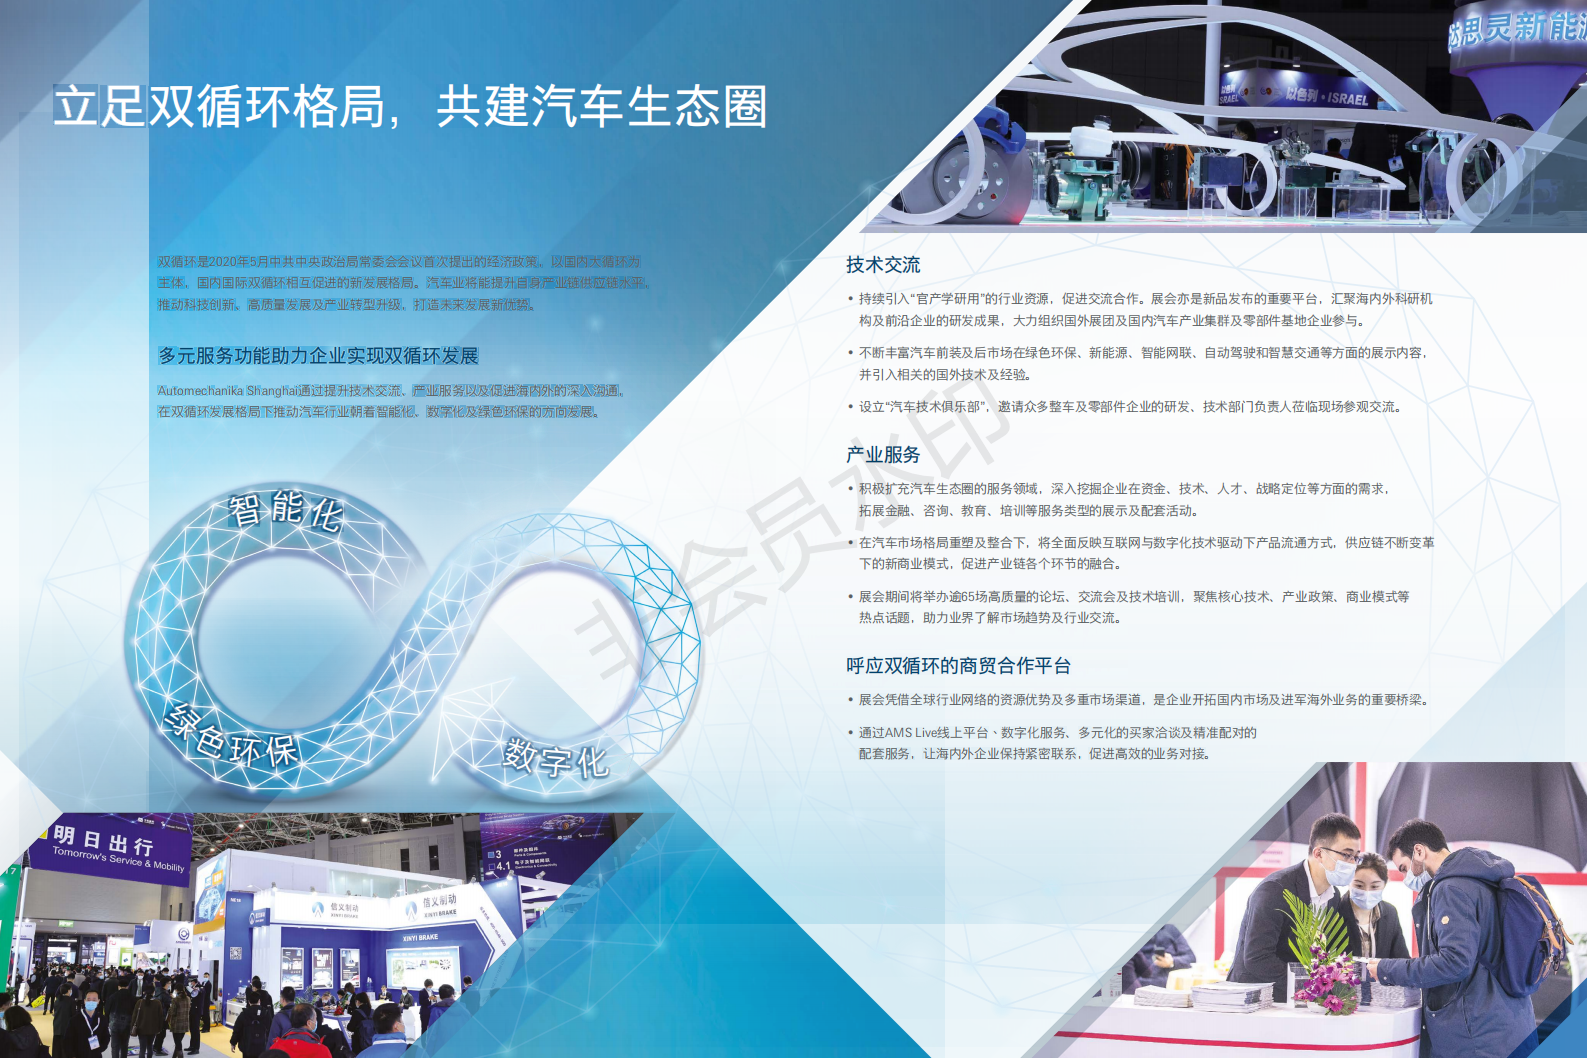 中國國際汽車零配件維修檢測診斷設備及服務用品展覽會